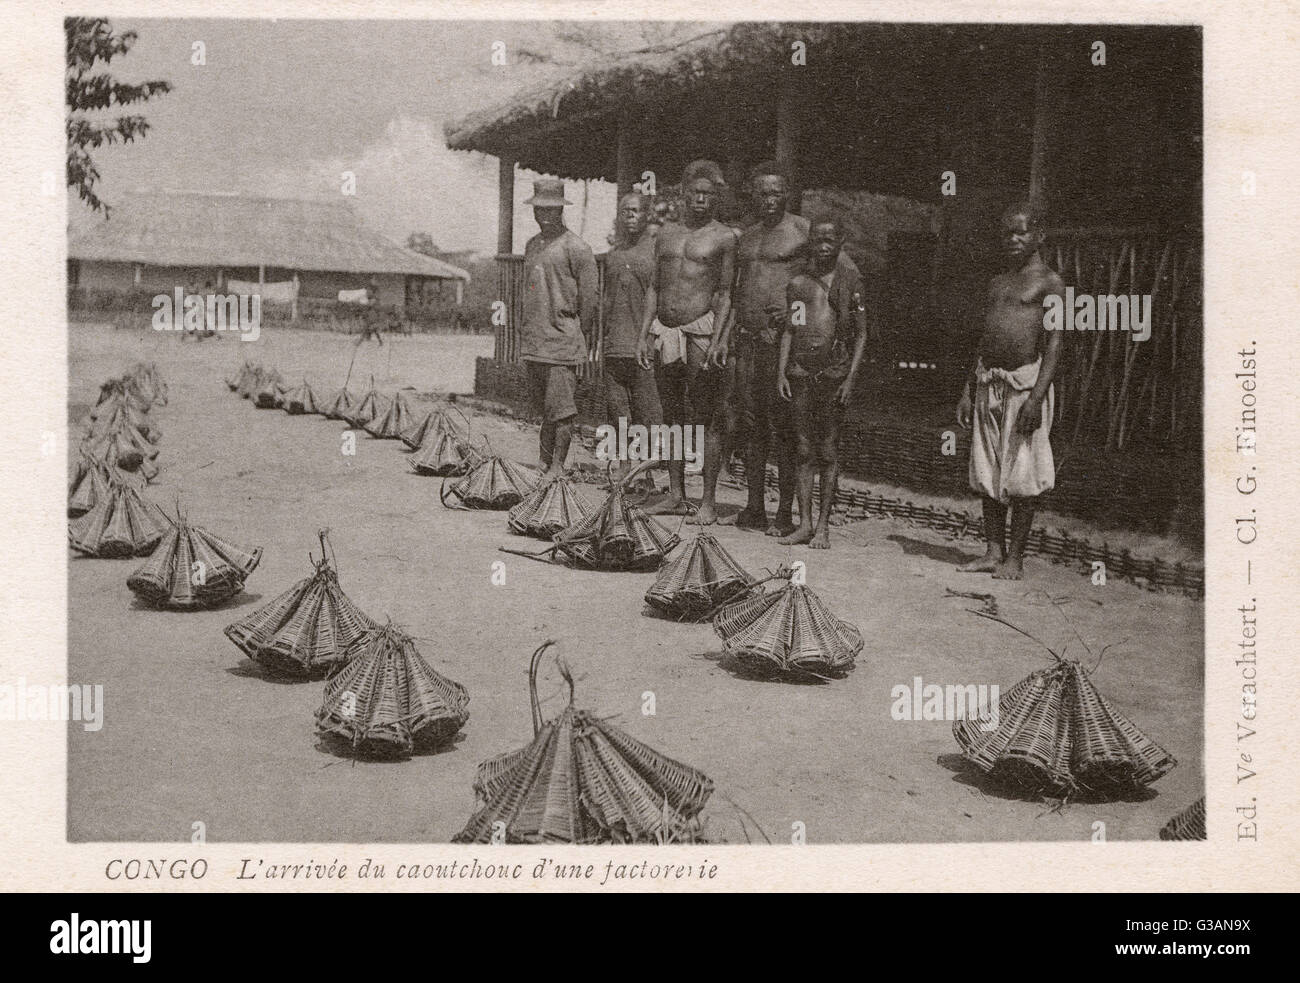 Kongo - Afrika - Ankunft von Kautschuk, in speziell geflochtenen Trägern transportiert. In den frühen 1900er Jahren wurde der Kongo-Freistaat auch eine bedeutende Quelle von Naturkautschuk-Latex, meist durch Zwangsarbeit unter entsetzlichen menschlichen Bedingungen gesammelt Stockfoto